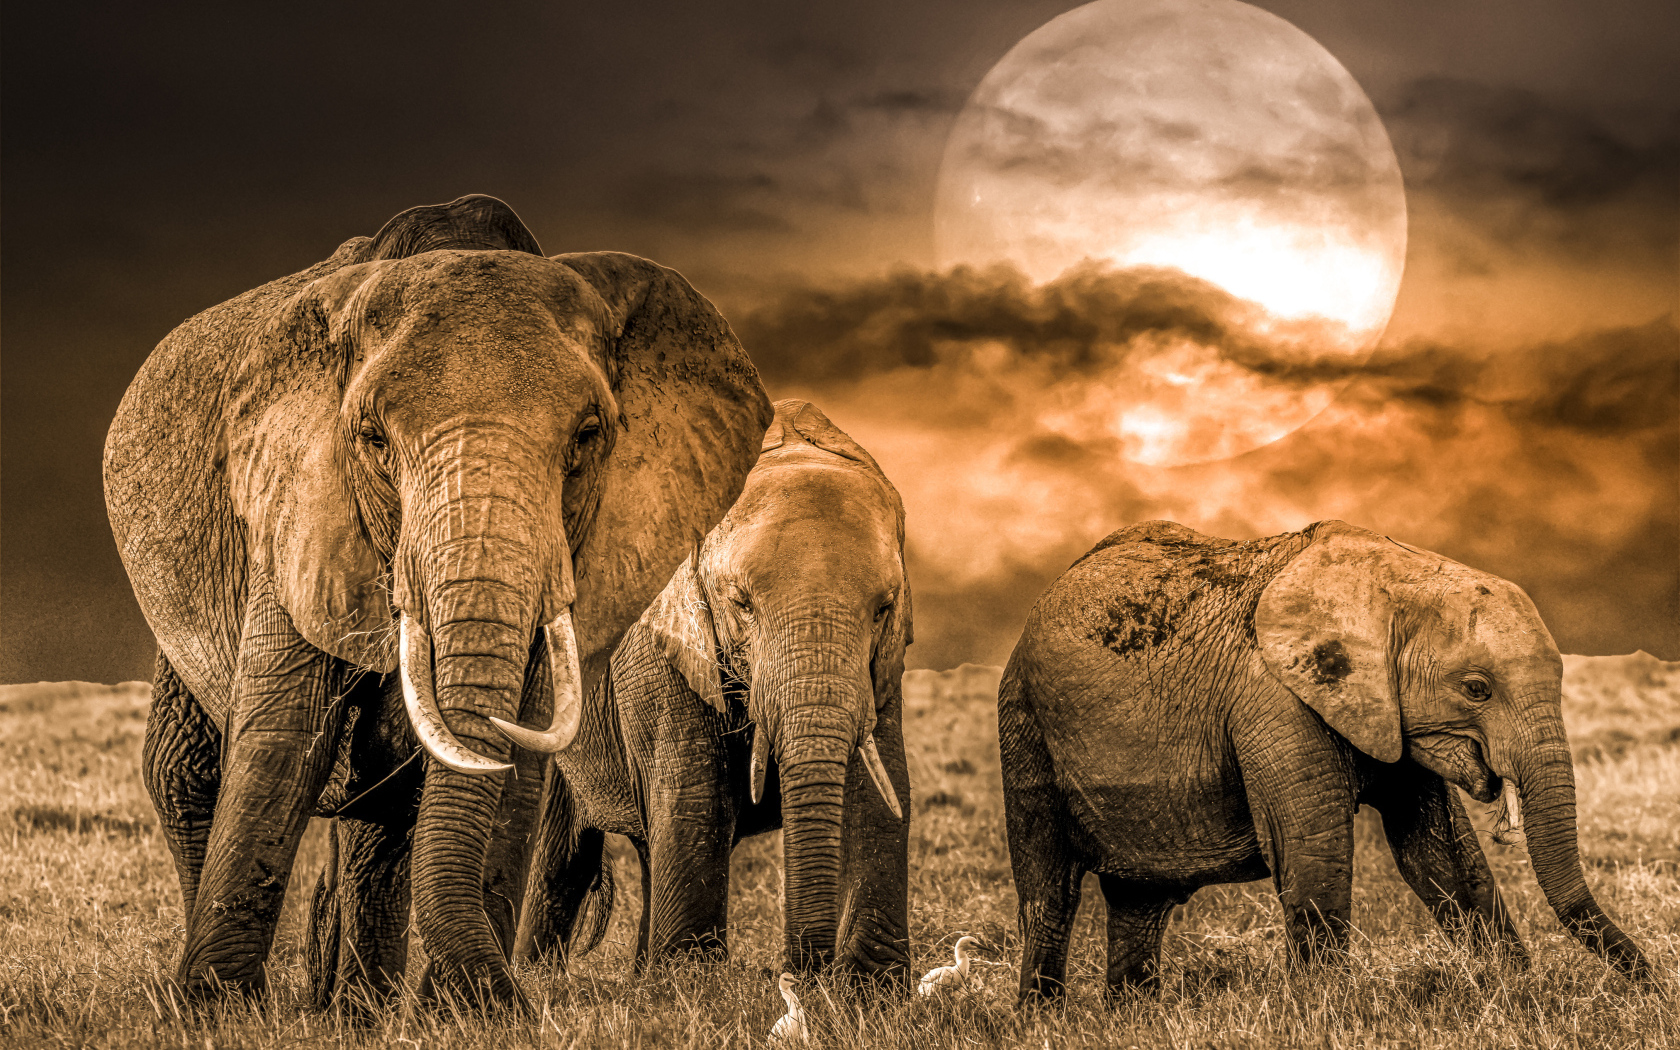 Стадо слонов на фоне луны